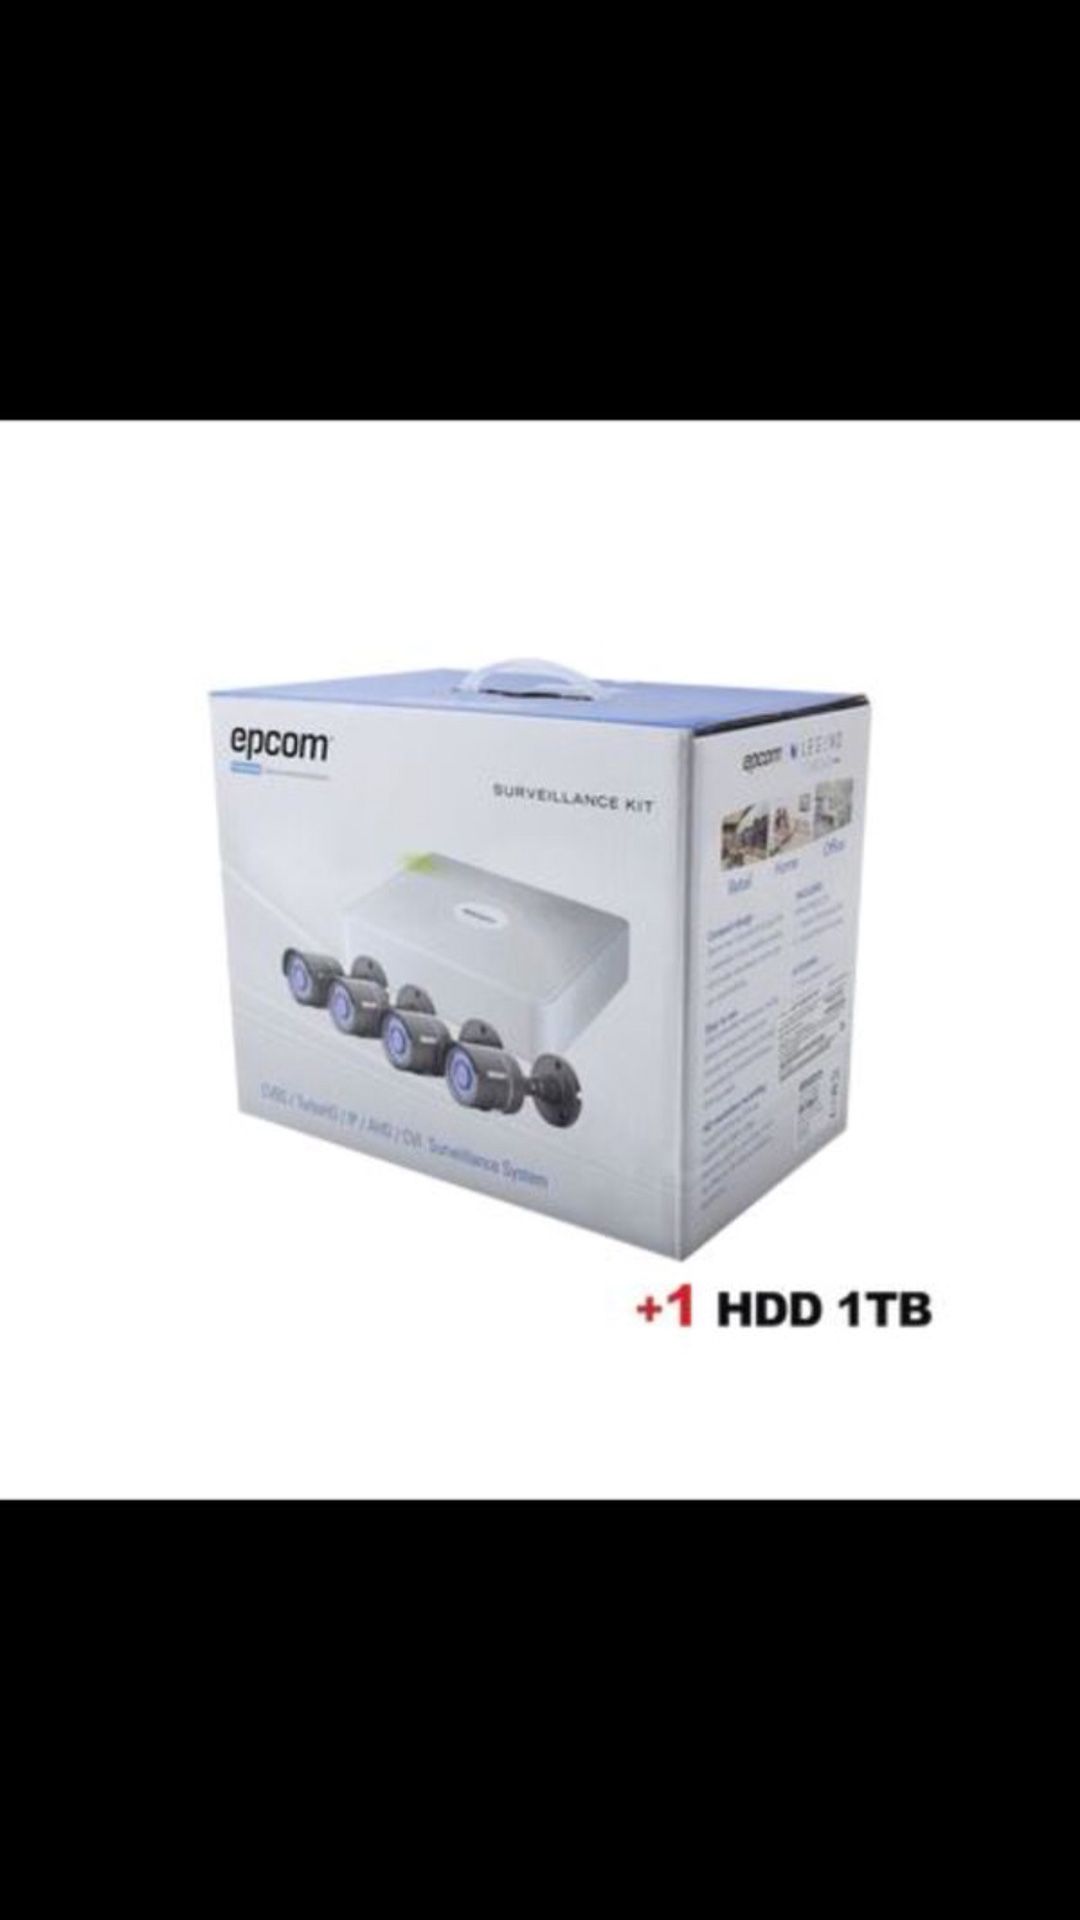 4 channel HD camera kit SALE SALE SALE